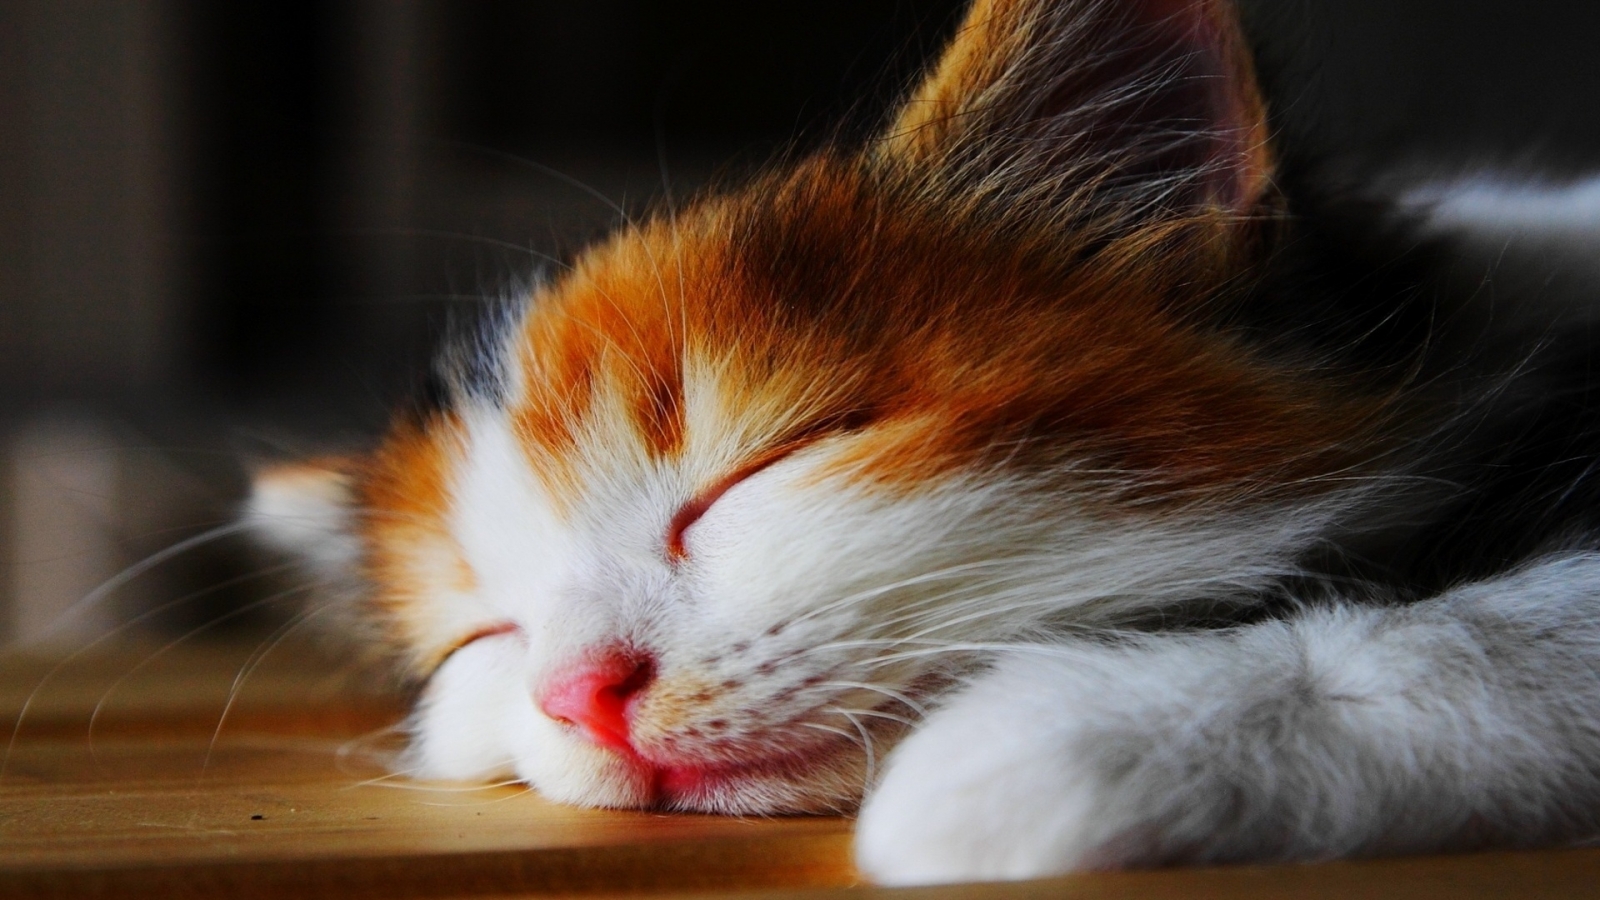 Amazingly Cute Sleepy Kitten  for 1600 x 900 HDTV resolution